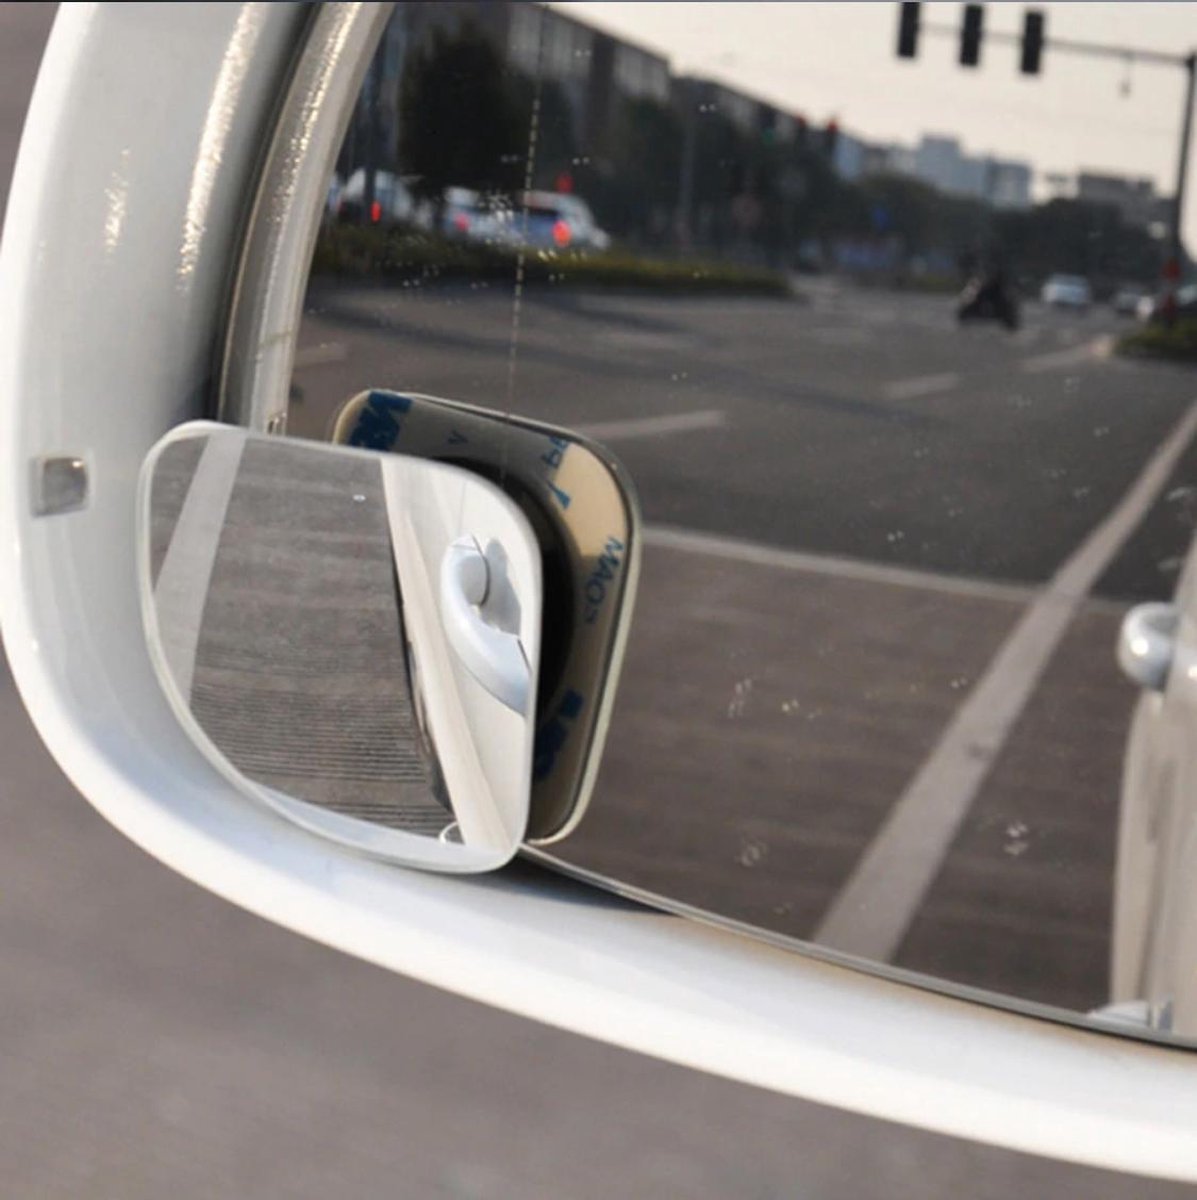 Cabantis Dodehoekspiegel-set|Autospiegel|Veiligheid|Parkeren| 2 x Driehoekvorm-spiegel